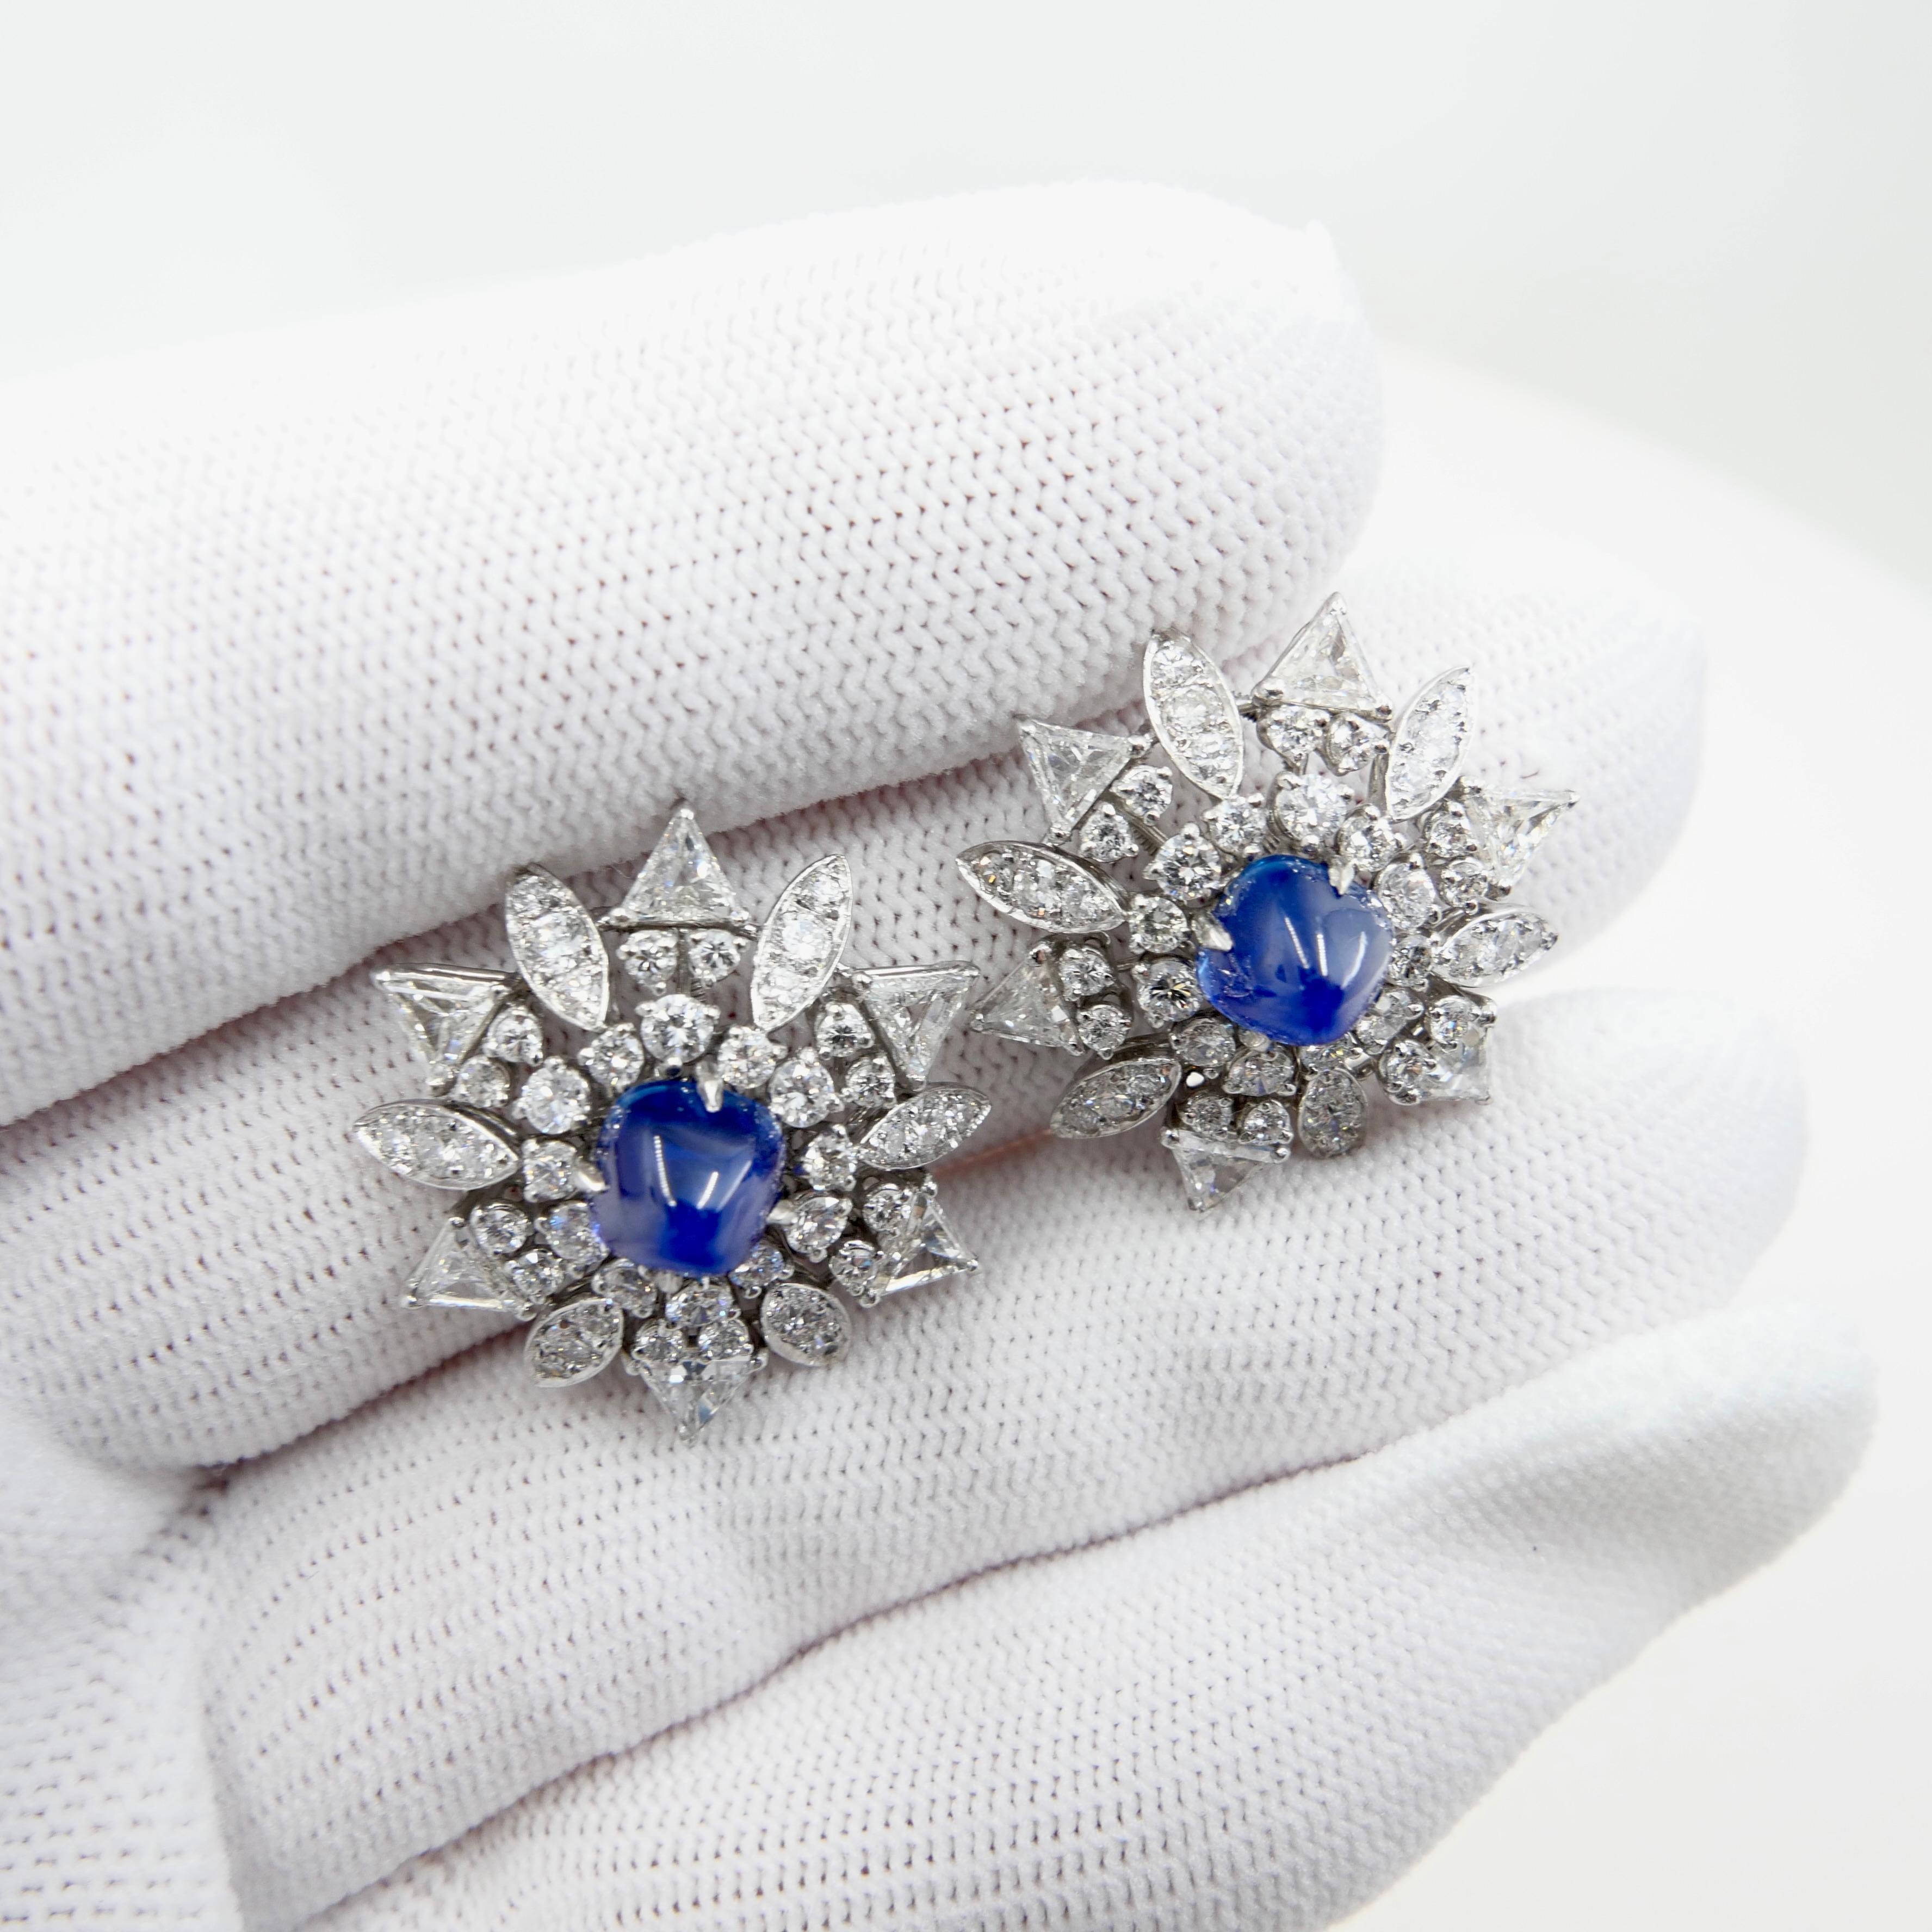 Certified Kashmir Sapphire No Heat Diamond Cluster Earrings, Cornflower Blue 8